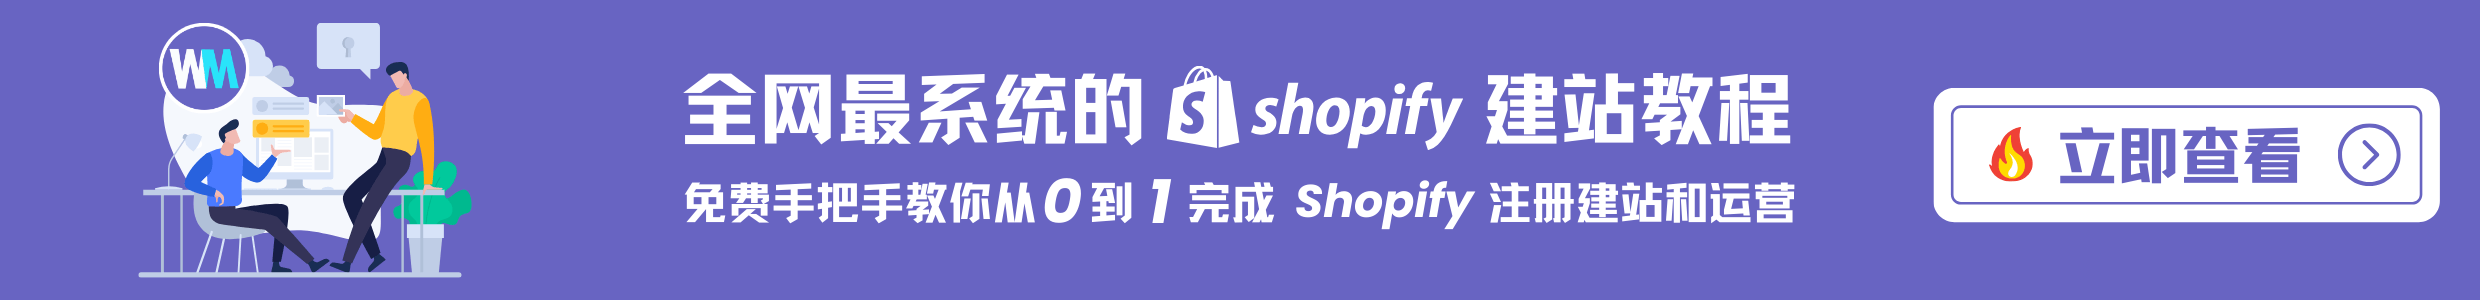 图片[11]-Shopify商店详细信息Store Details设置 - Shopify地址, 邮箱, 货币单位, 时区设置 | 歪猫跨境 | WaimaoB2C-歪猫跨境 | WaimaoB2C